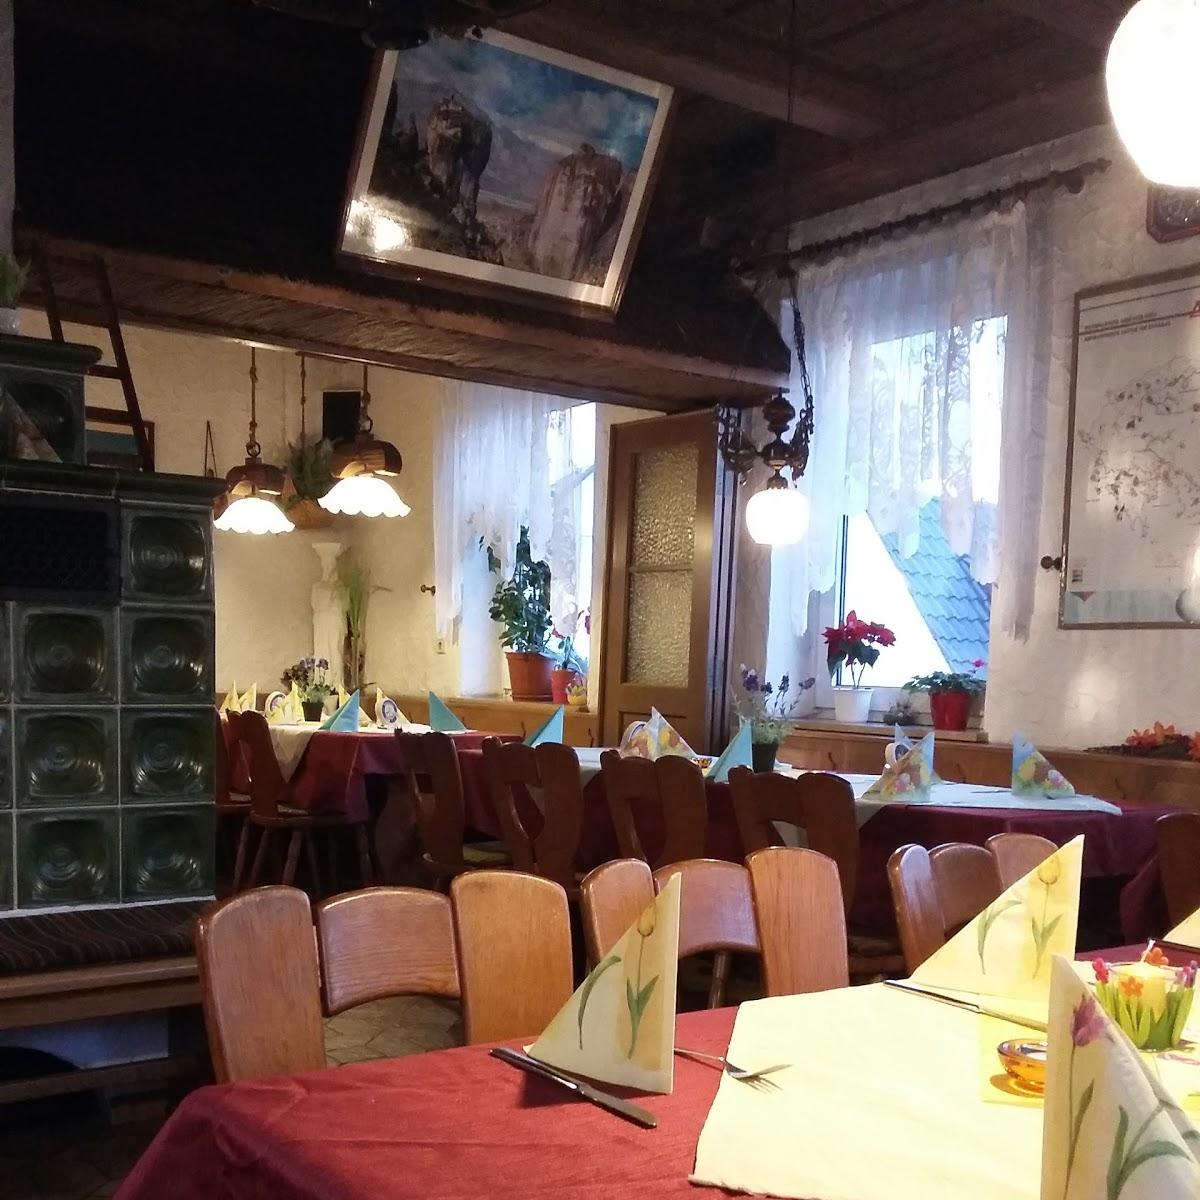 Restaurant "Restaurant Sokrates" in Forchheim